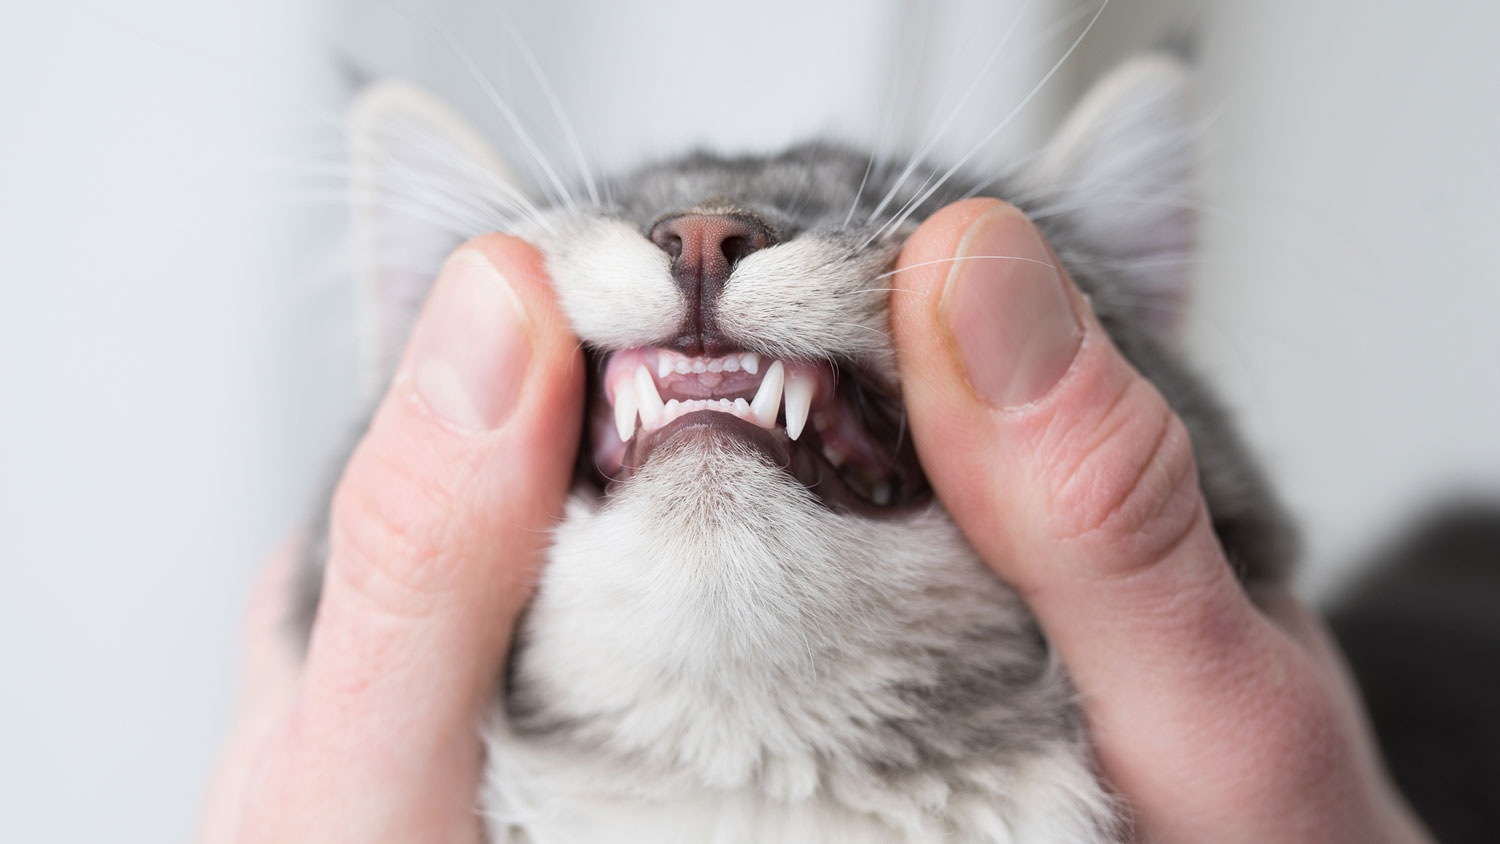 Dientes de gato: un gato al que le examinan los dientes